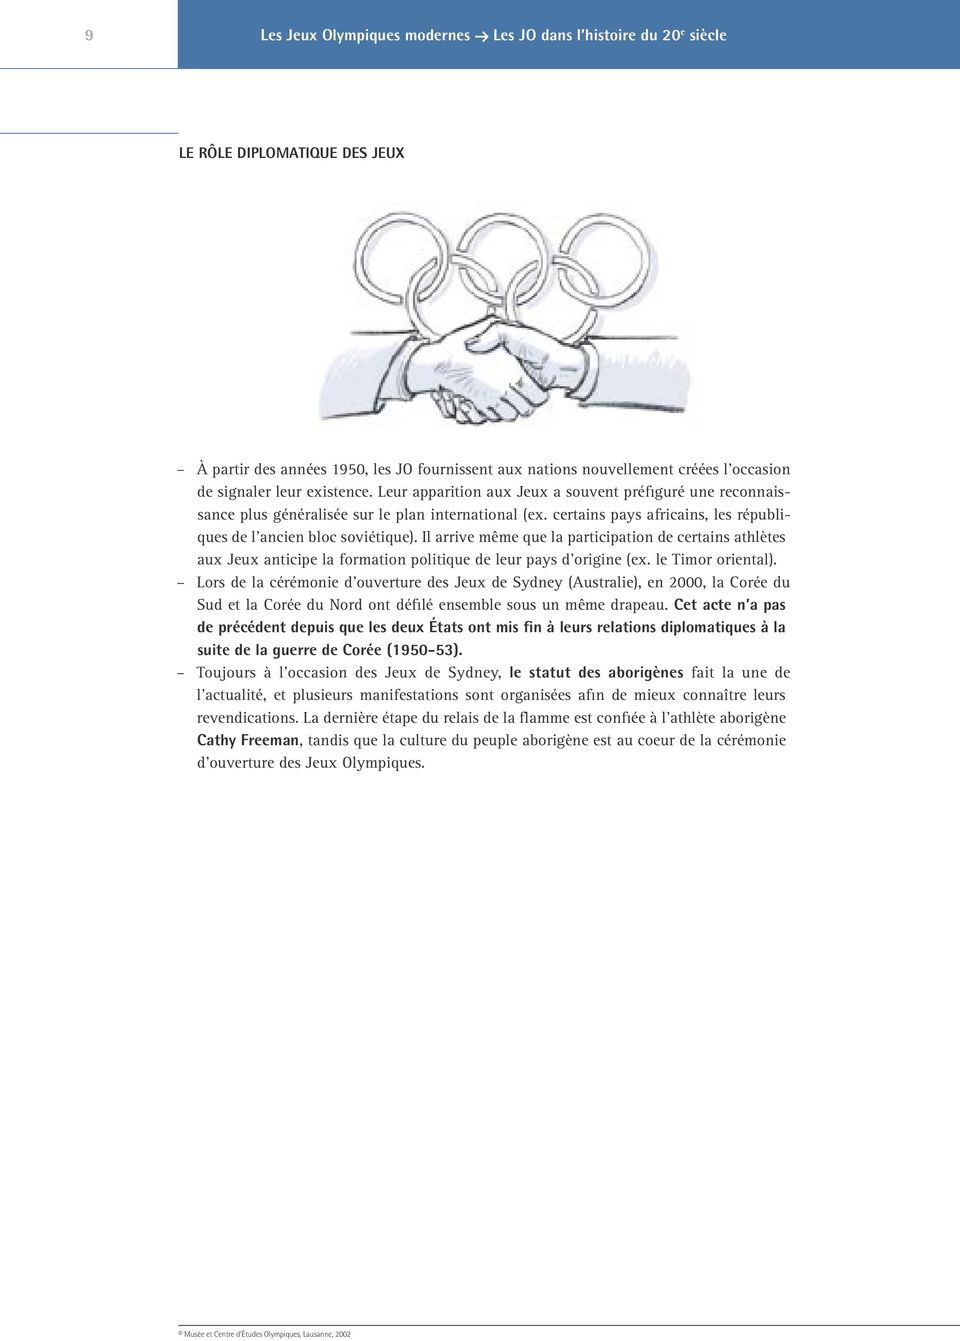 Il arrive même que la participation de certains athlètes aux Jeux anticipe la formation politique de leur pays d origine (ex. le Timor oriental).